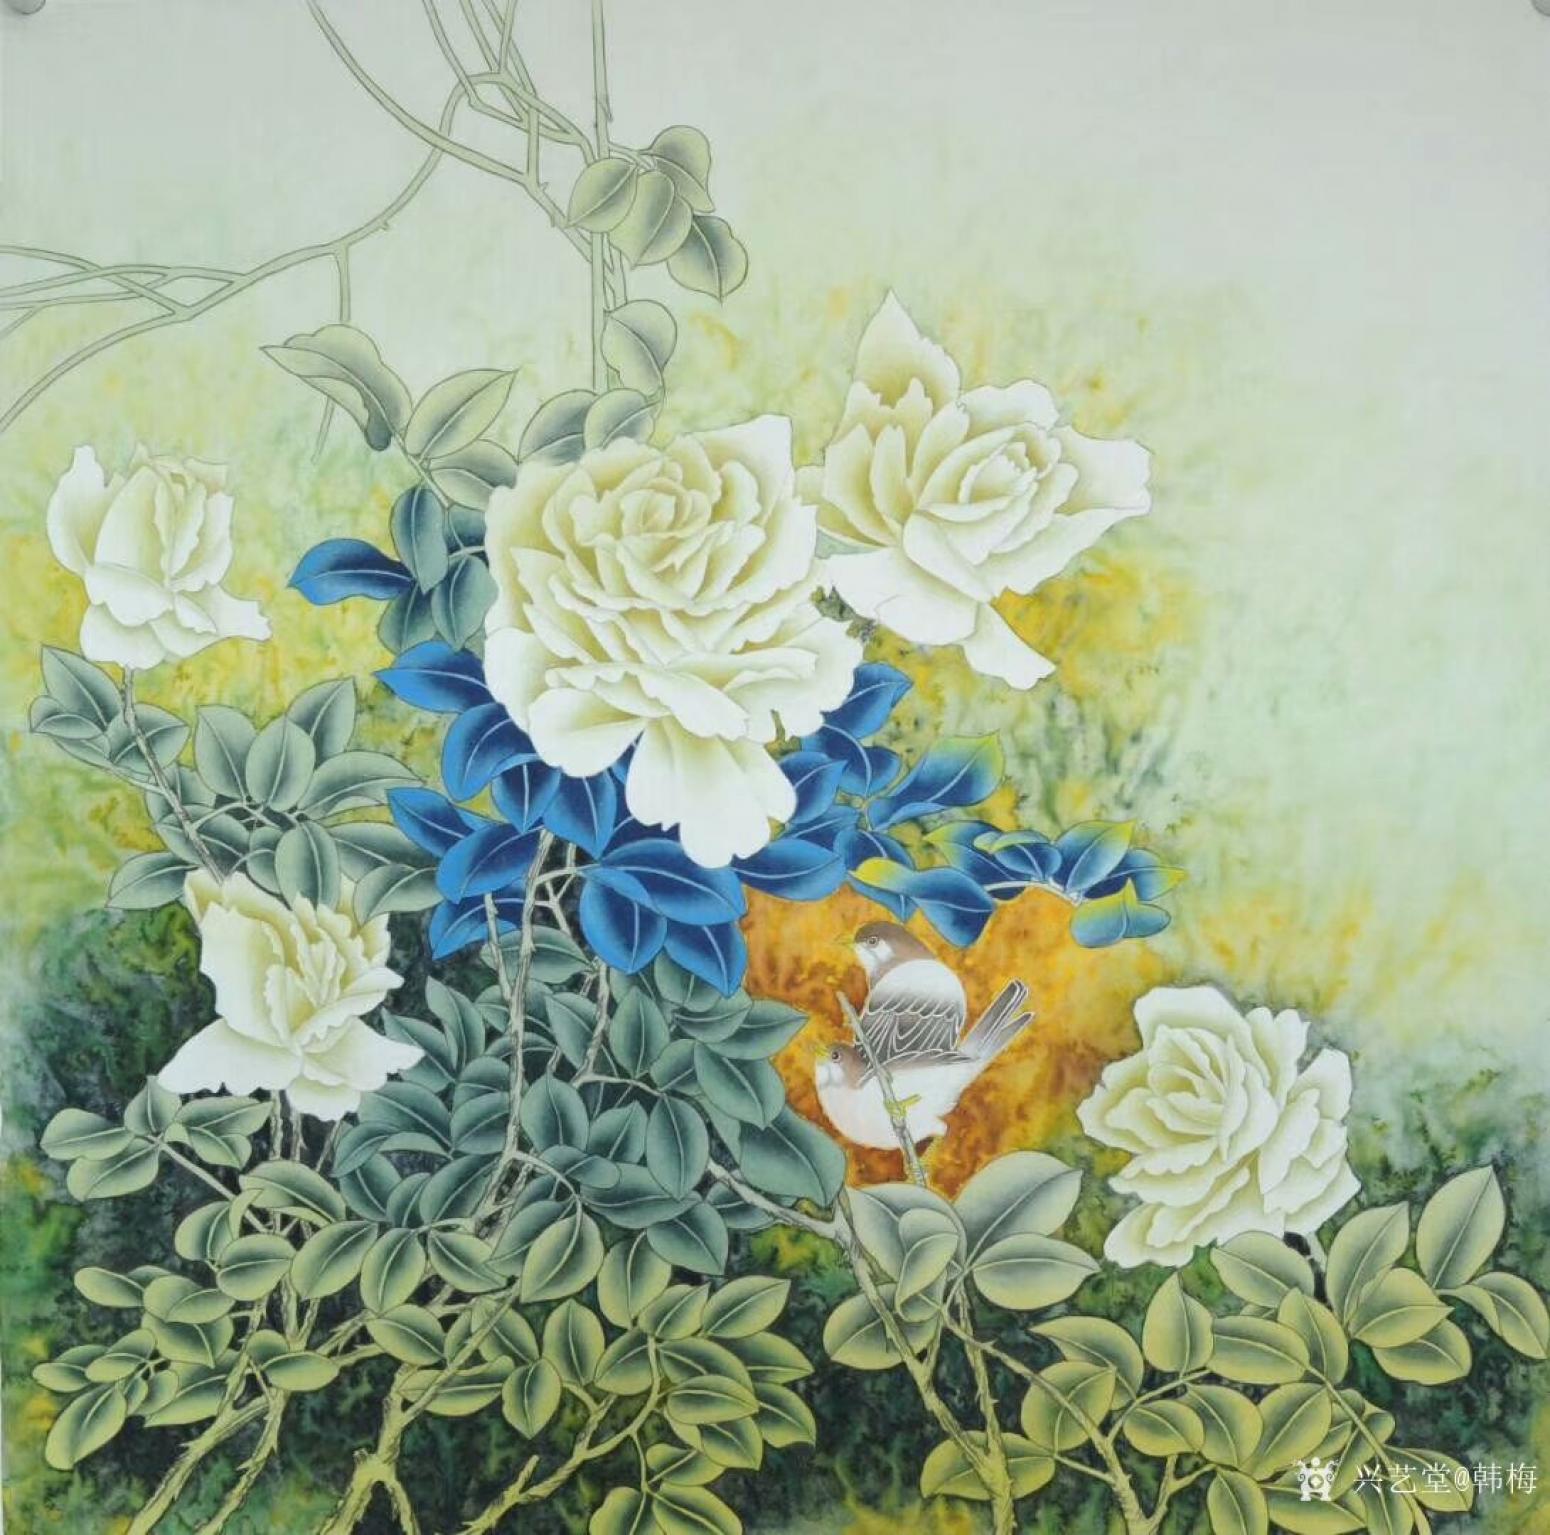 韩梅国画作品《鸟语花香》